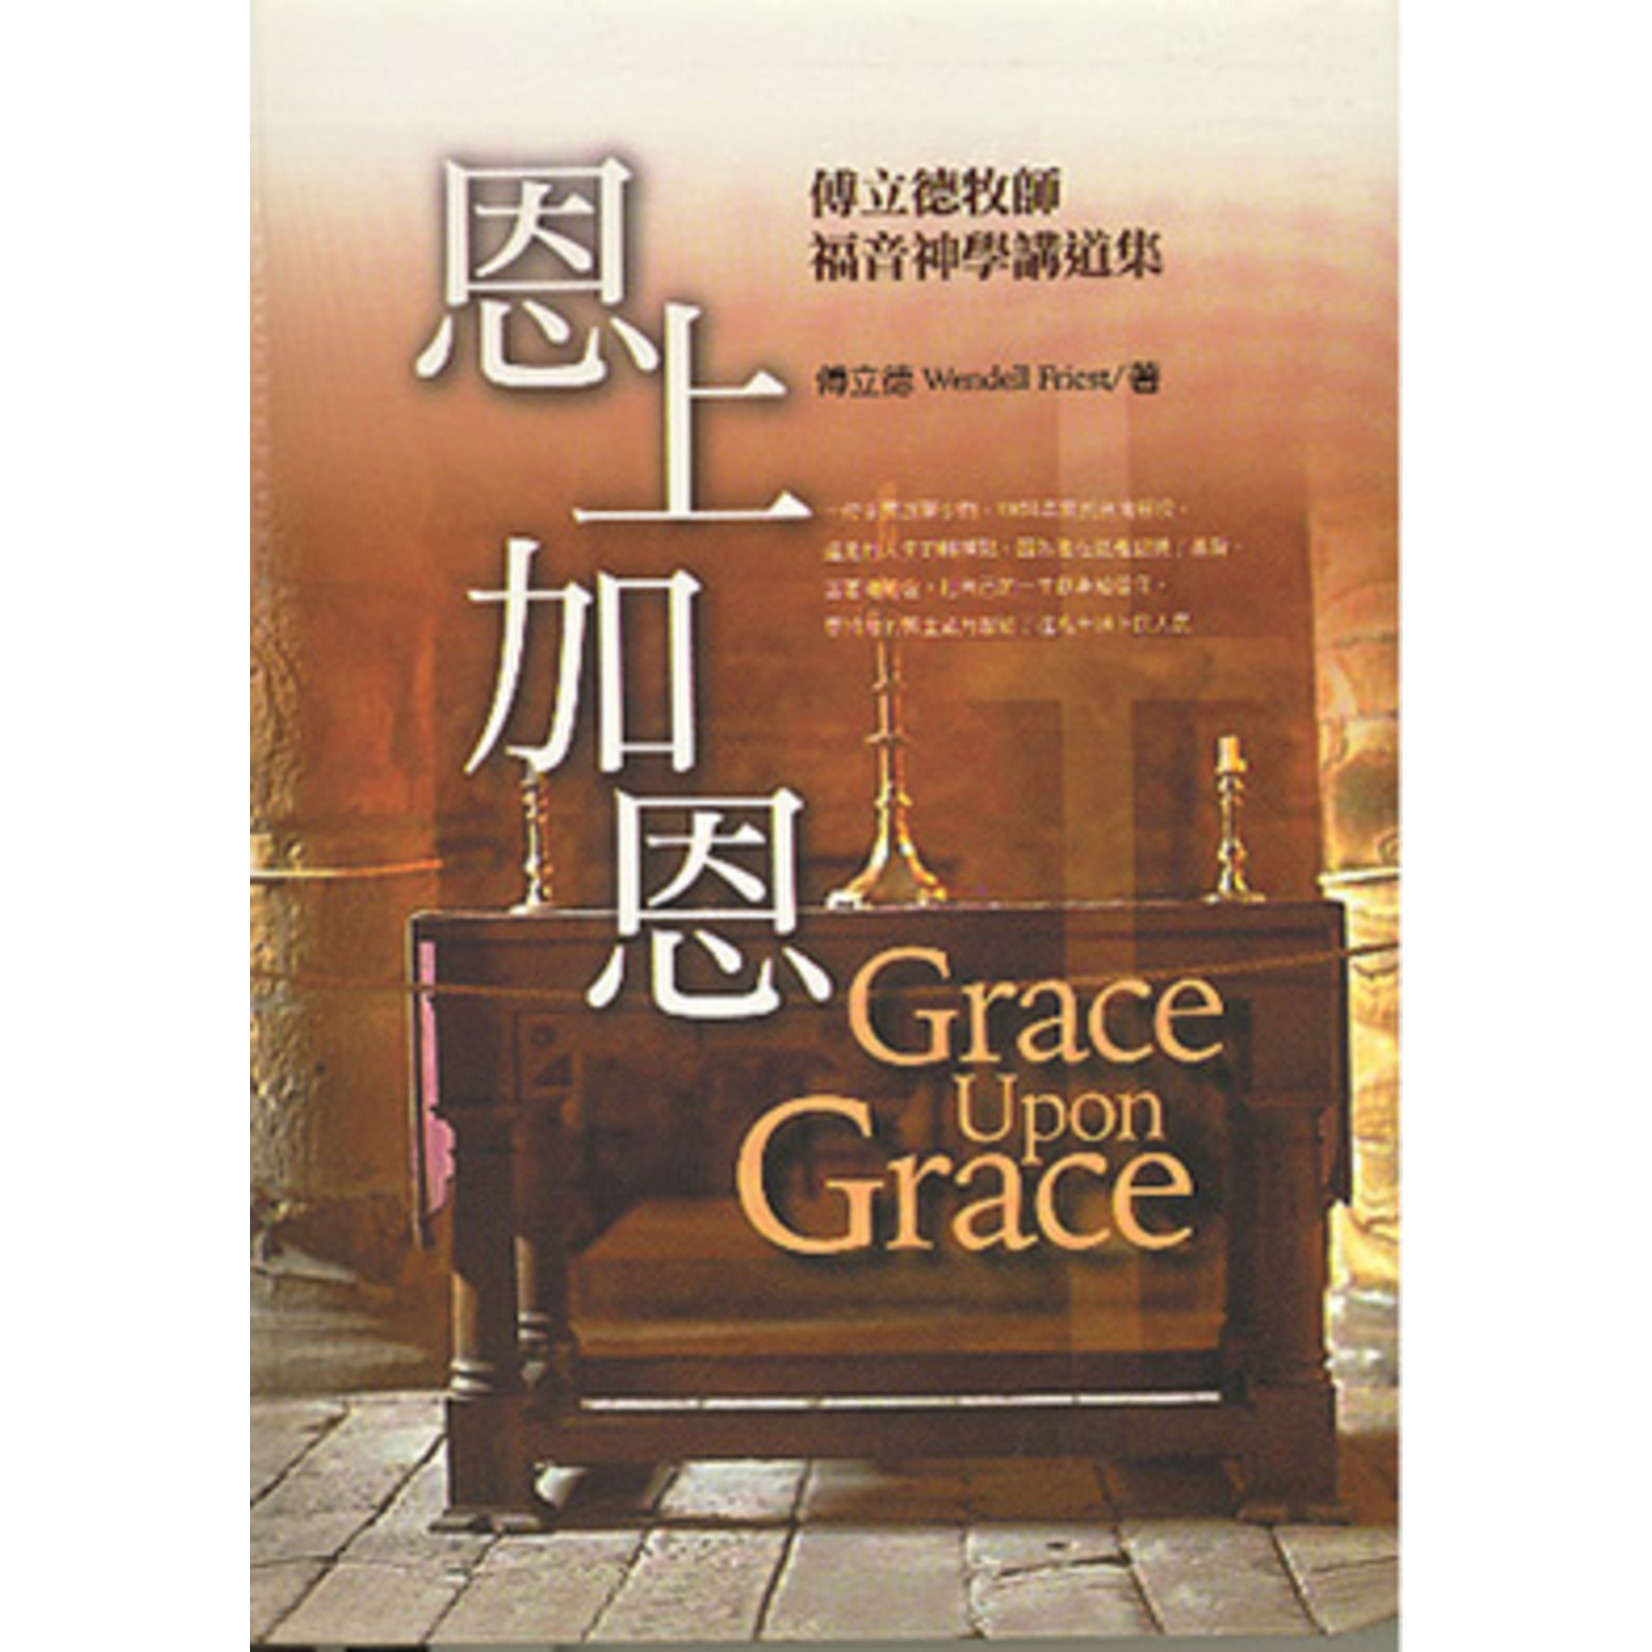 道聲 Taosheng Taiwan 恩上加恩：傅立德牧師福音神學講道集  （增訂版）Grace Upon Grace